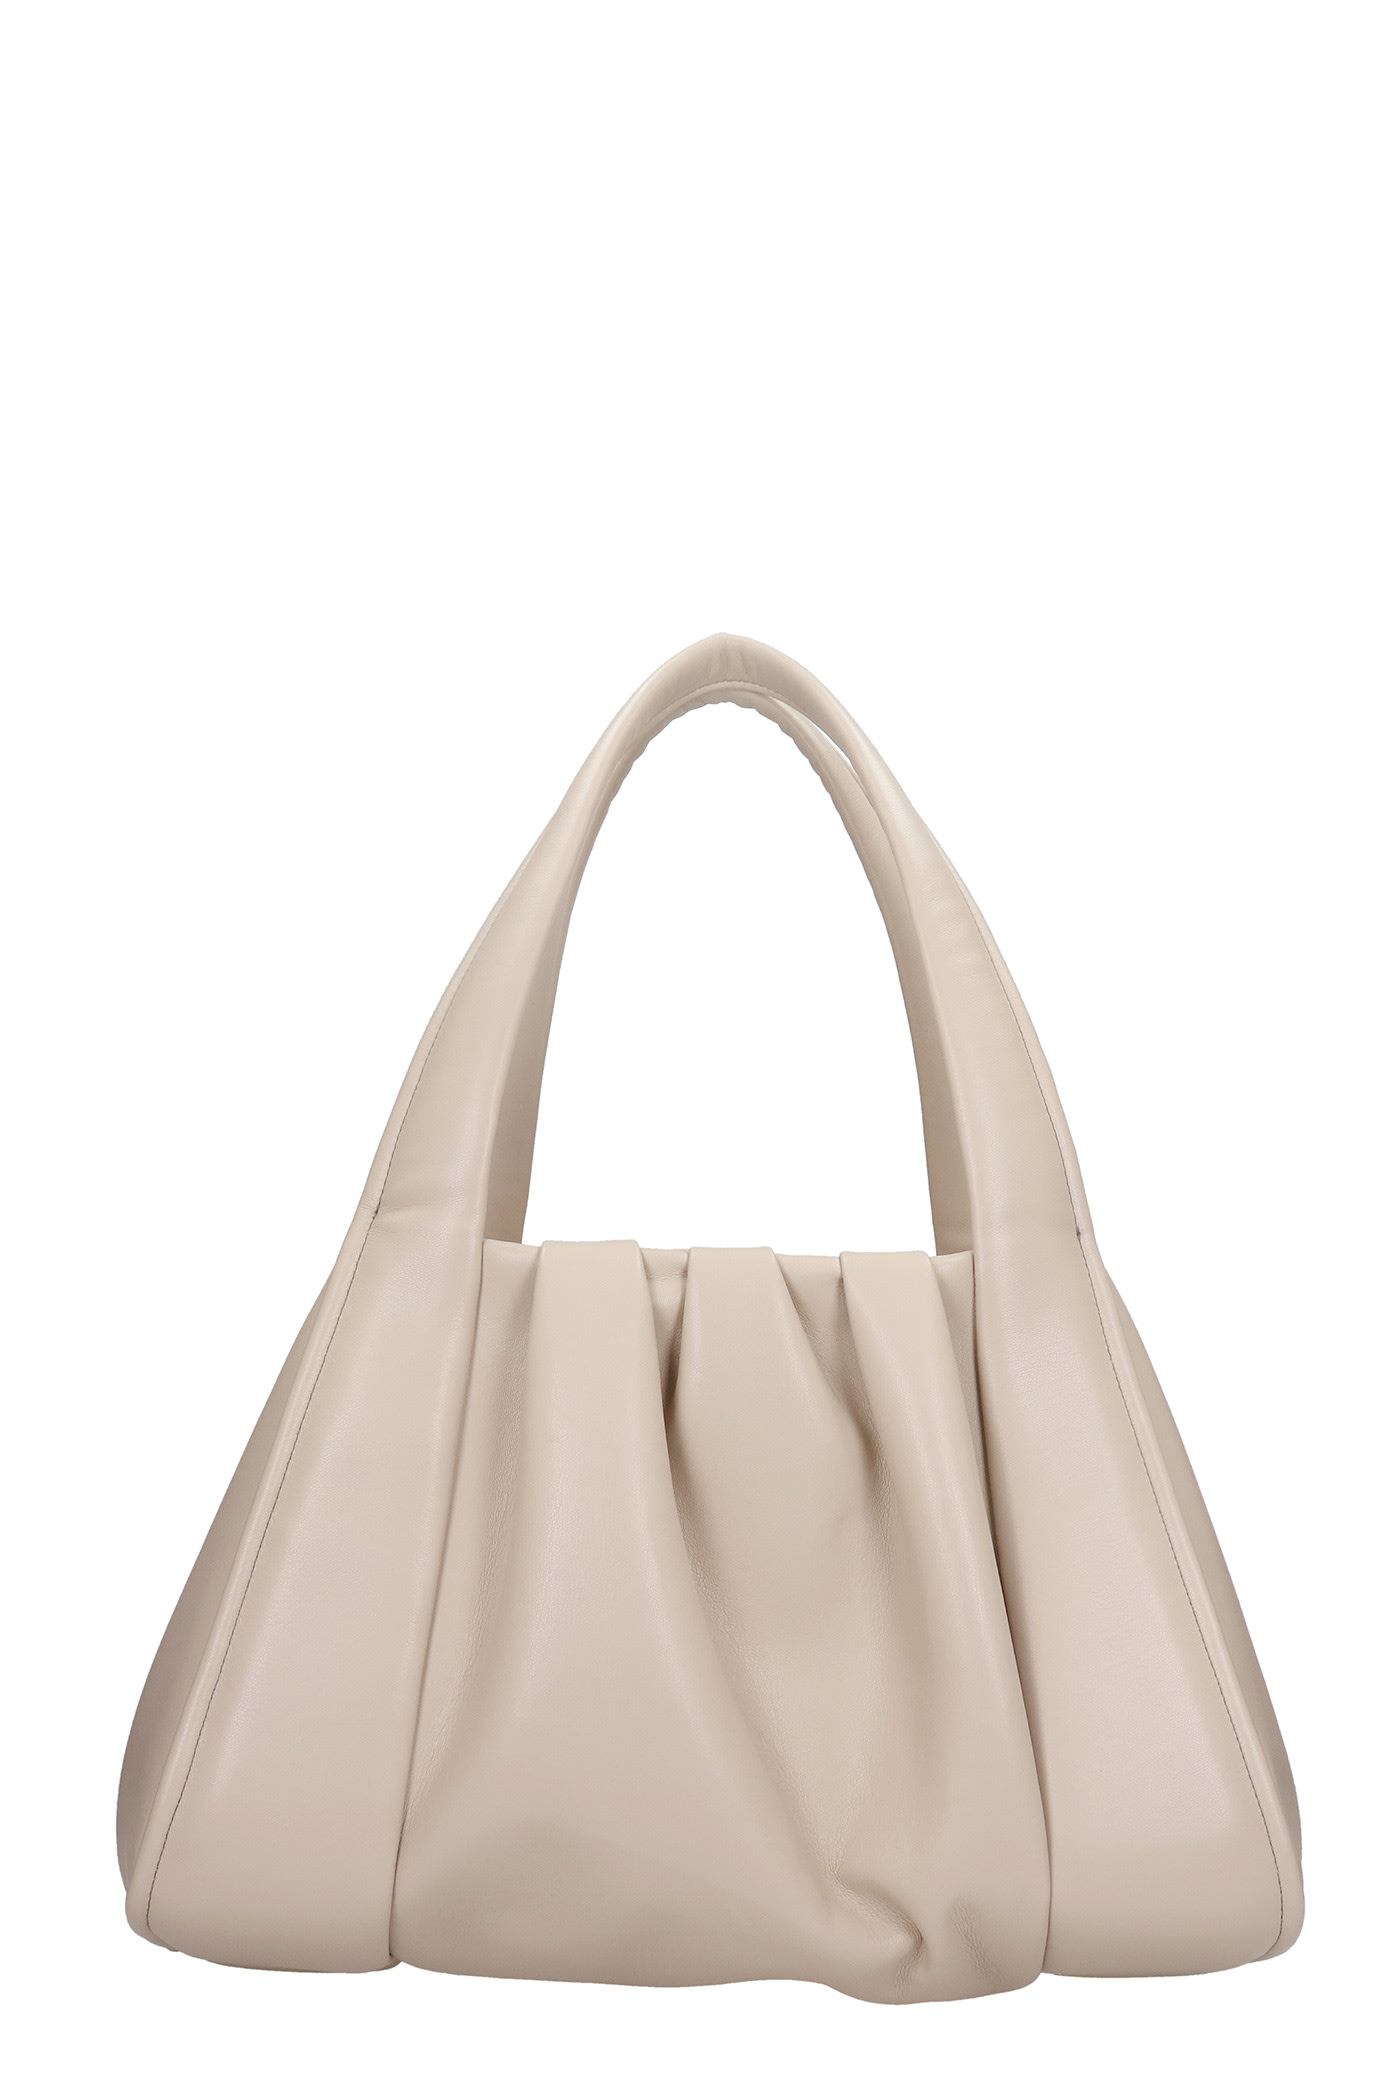 THEMOIRè Irida Basic Shoulder Bag In Beige Leather